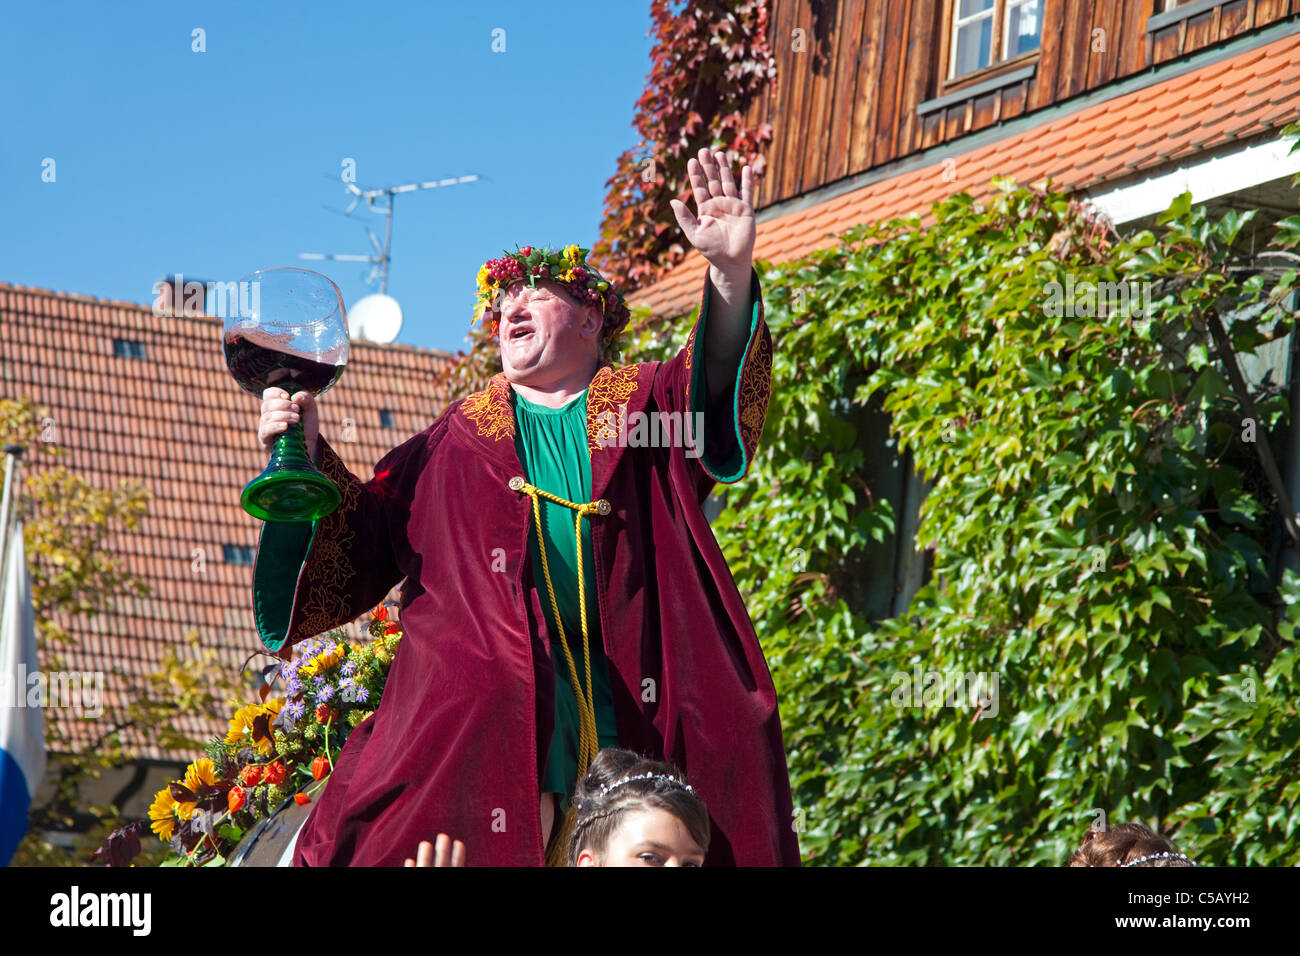 Bacchus le dieu du vin, fête folklorique avec groupes de costumes, fête de la récolte, festival du vin, Sasbachwalden, Forêt Noire, Bade-Wurtemberg, Allemagne Banque D'Images